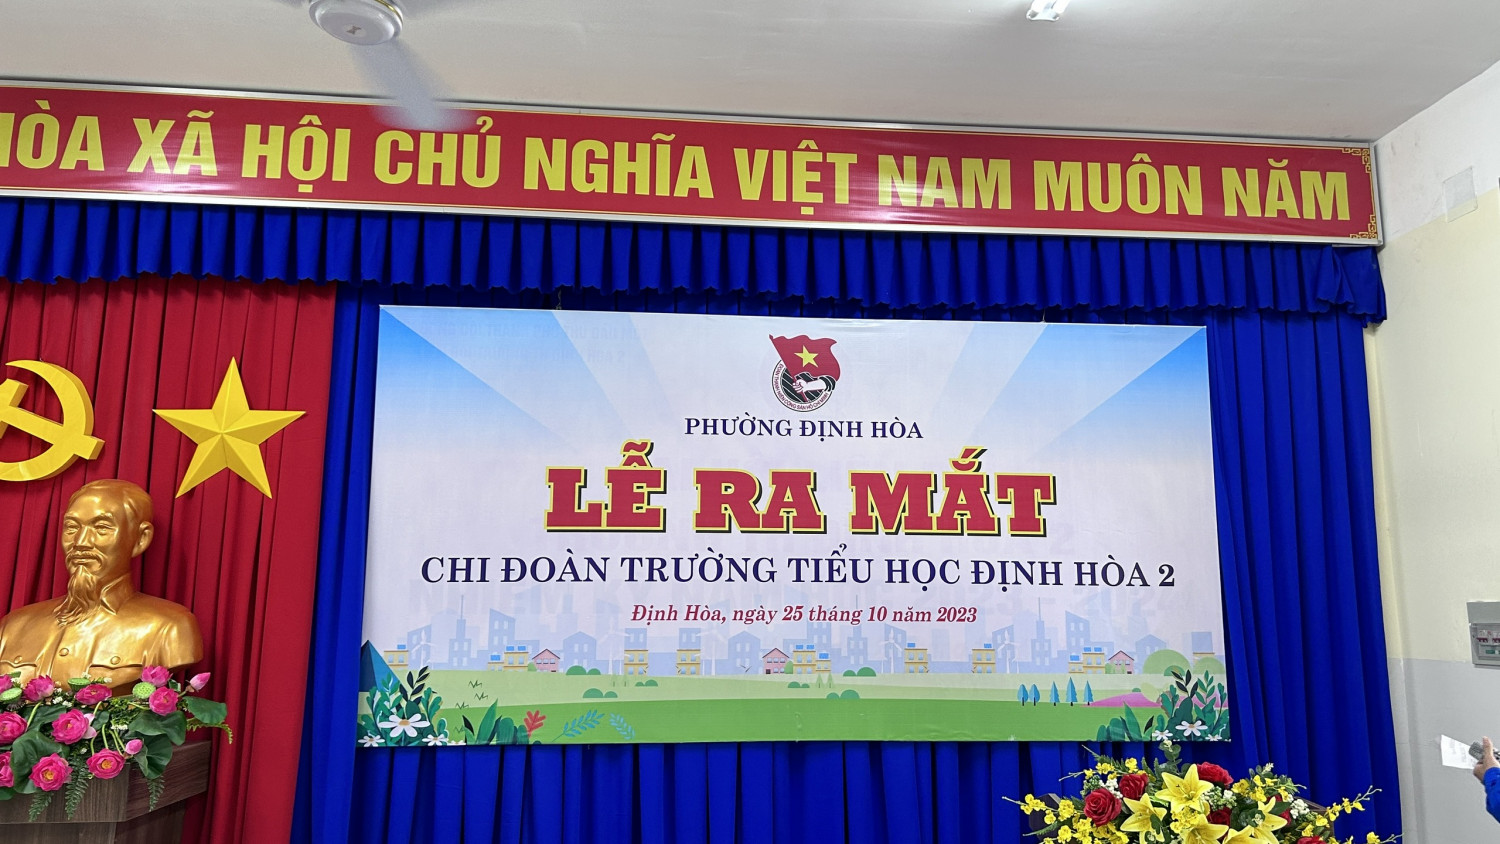 Lễ ra mắt chi đoàn trường Tiểu học Định Hòa 2